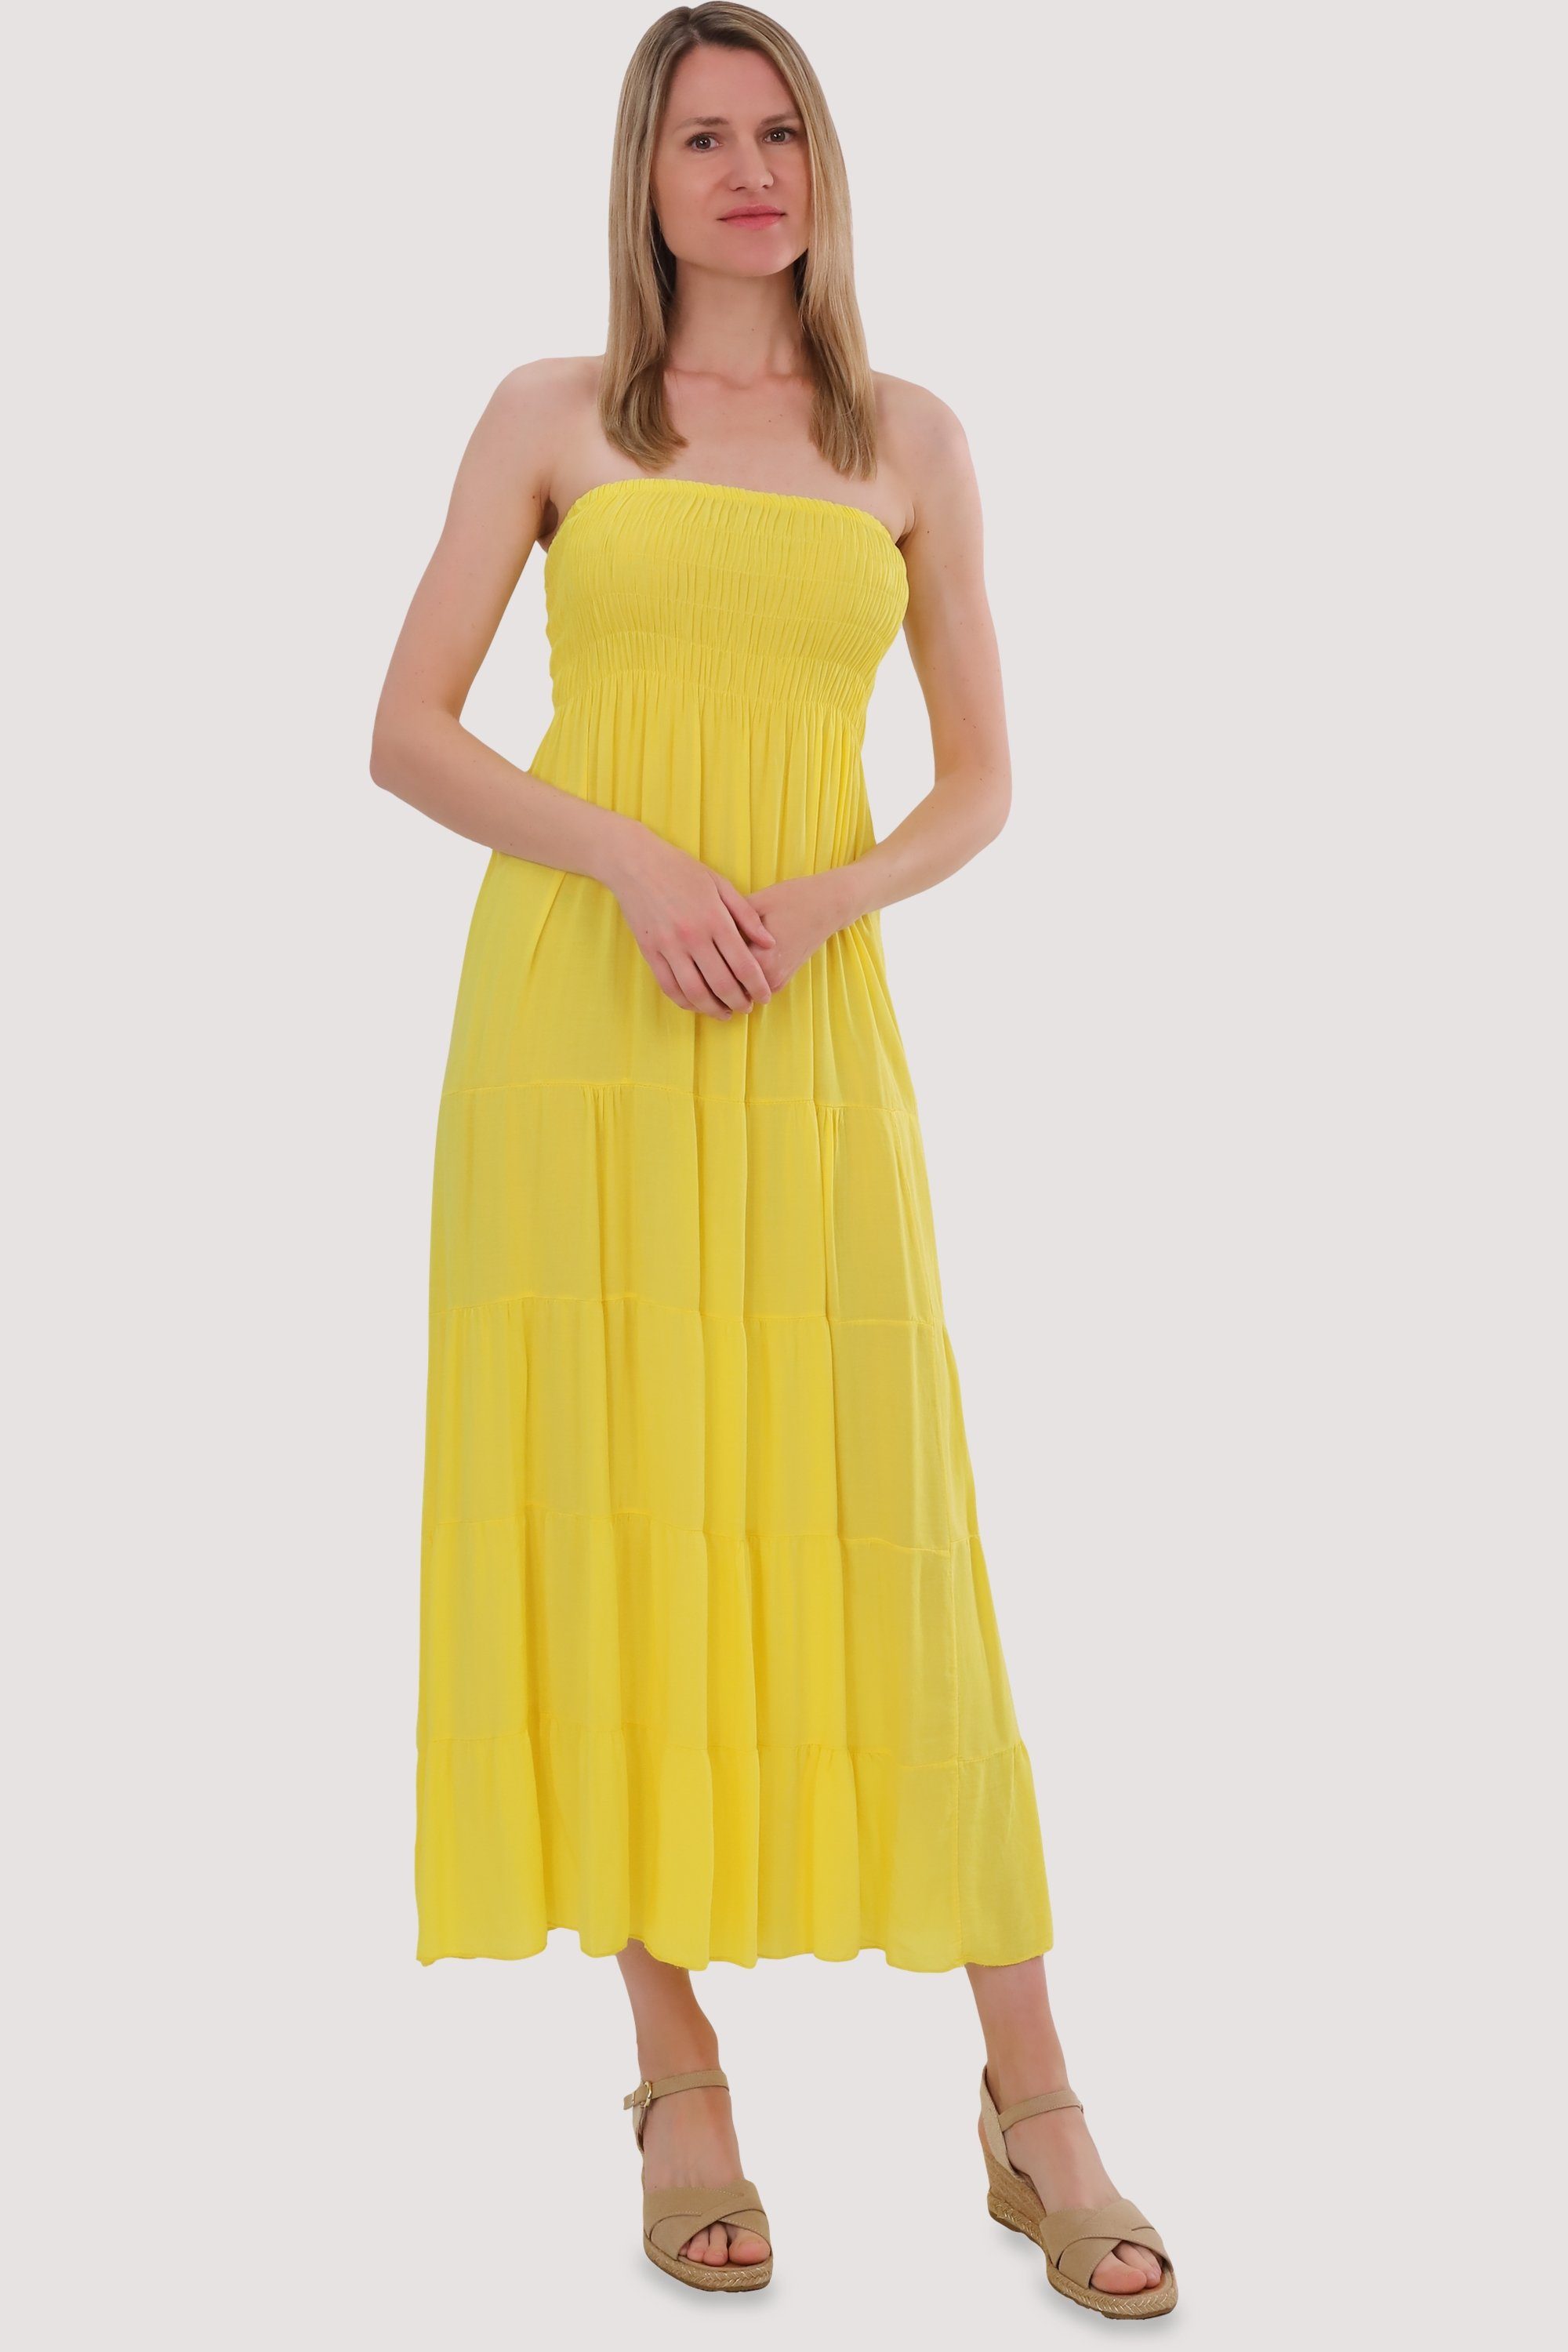 more than Sommerkleid gelb Strandkleid fashion 4635 malito figurumspielendes Einheitsgröße Bandeaukleid